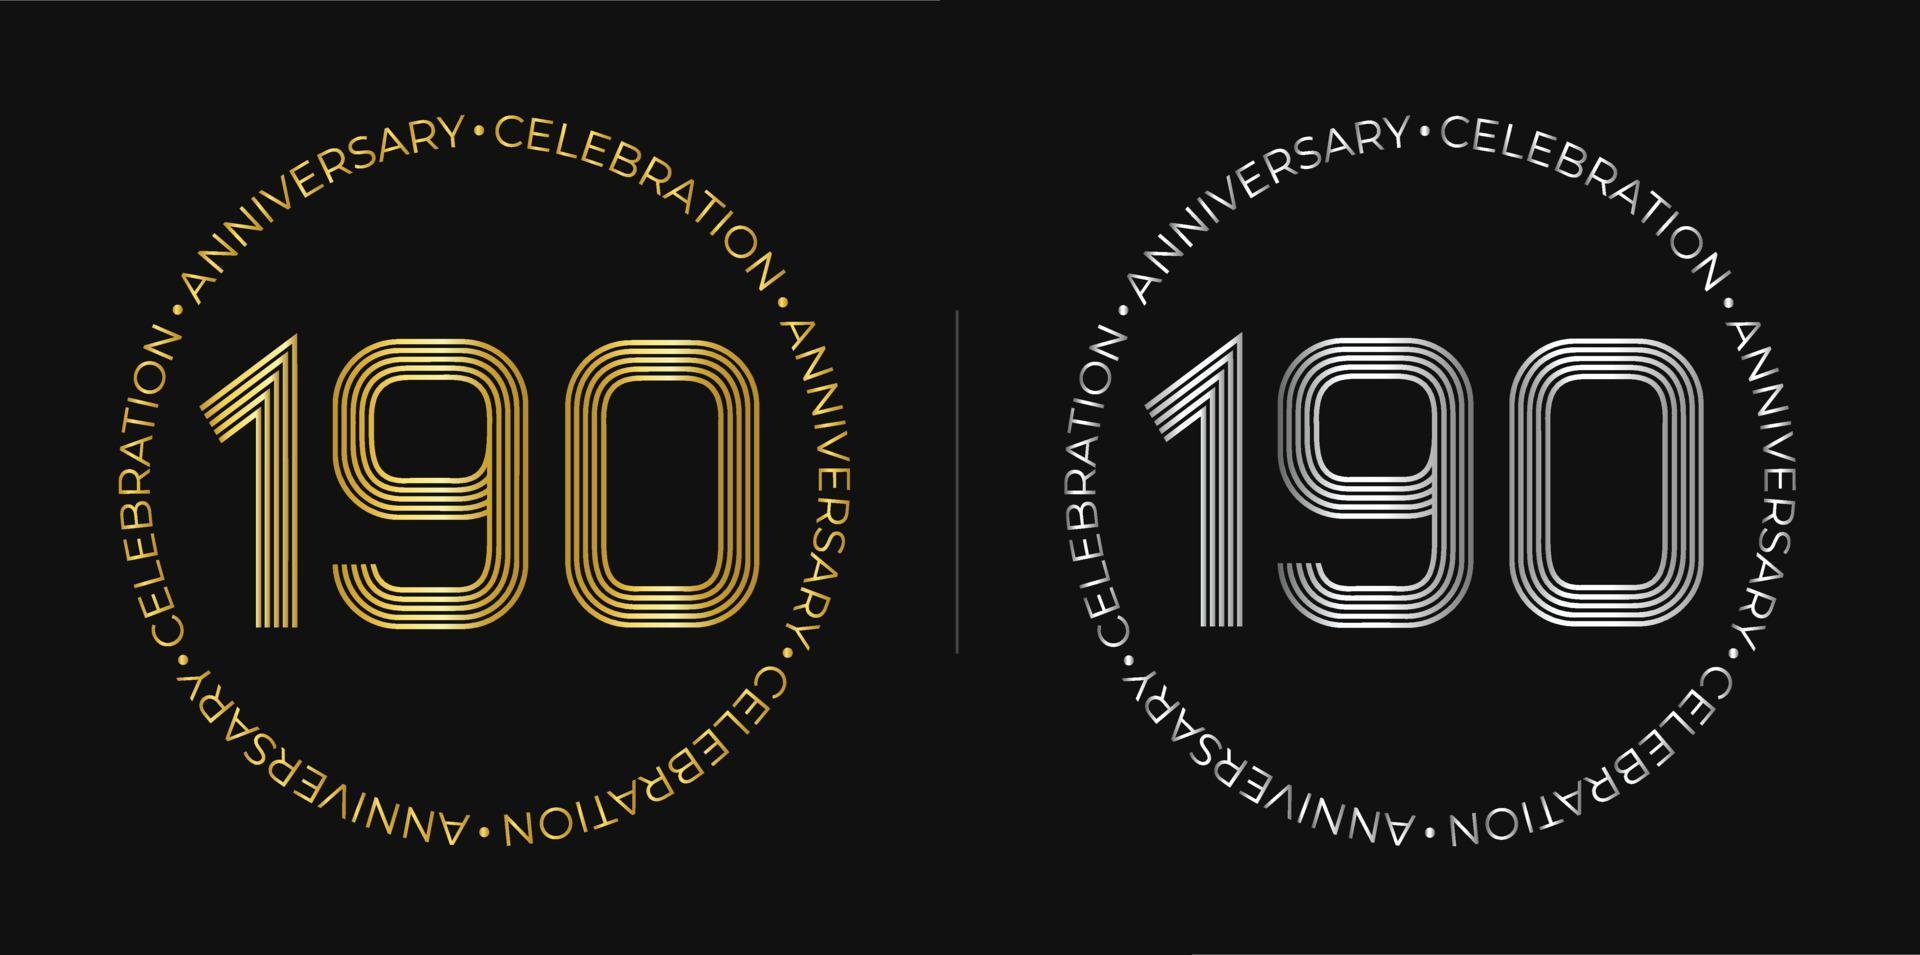 190 cumpleaños. banner de celebración de aniversario de ciento noventa años en colores dorado y plateado. logo circular con diseño de números originales en líneas elegantes. vector